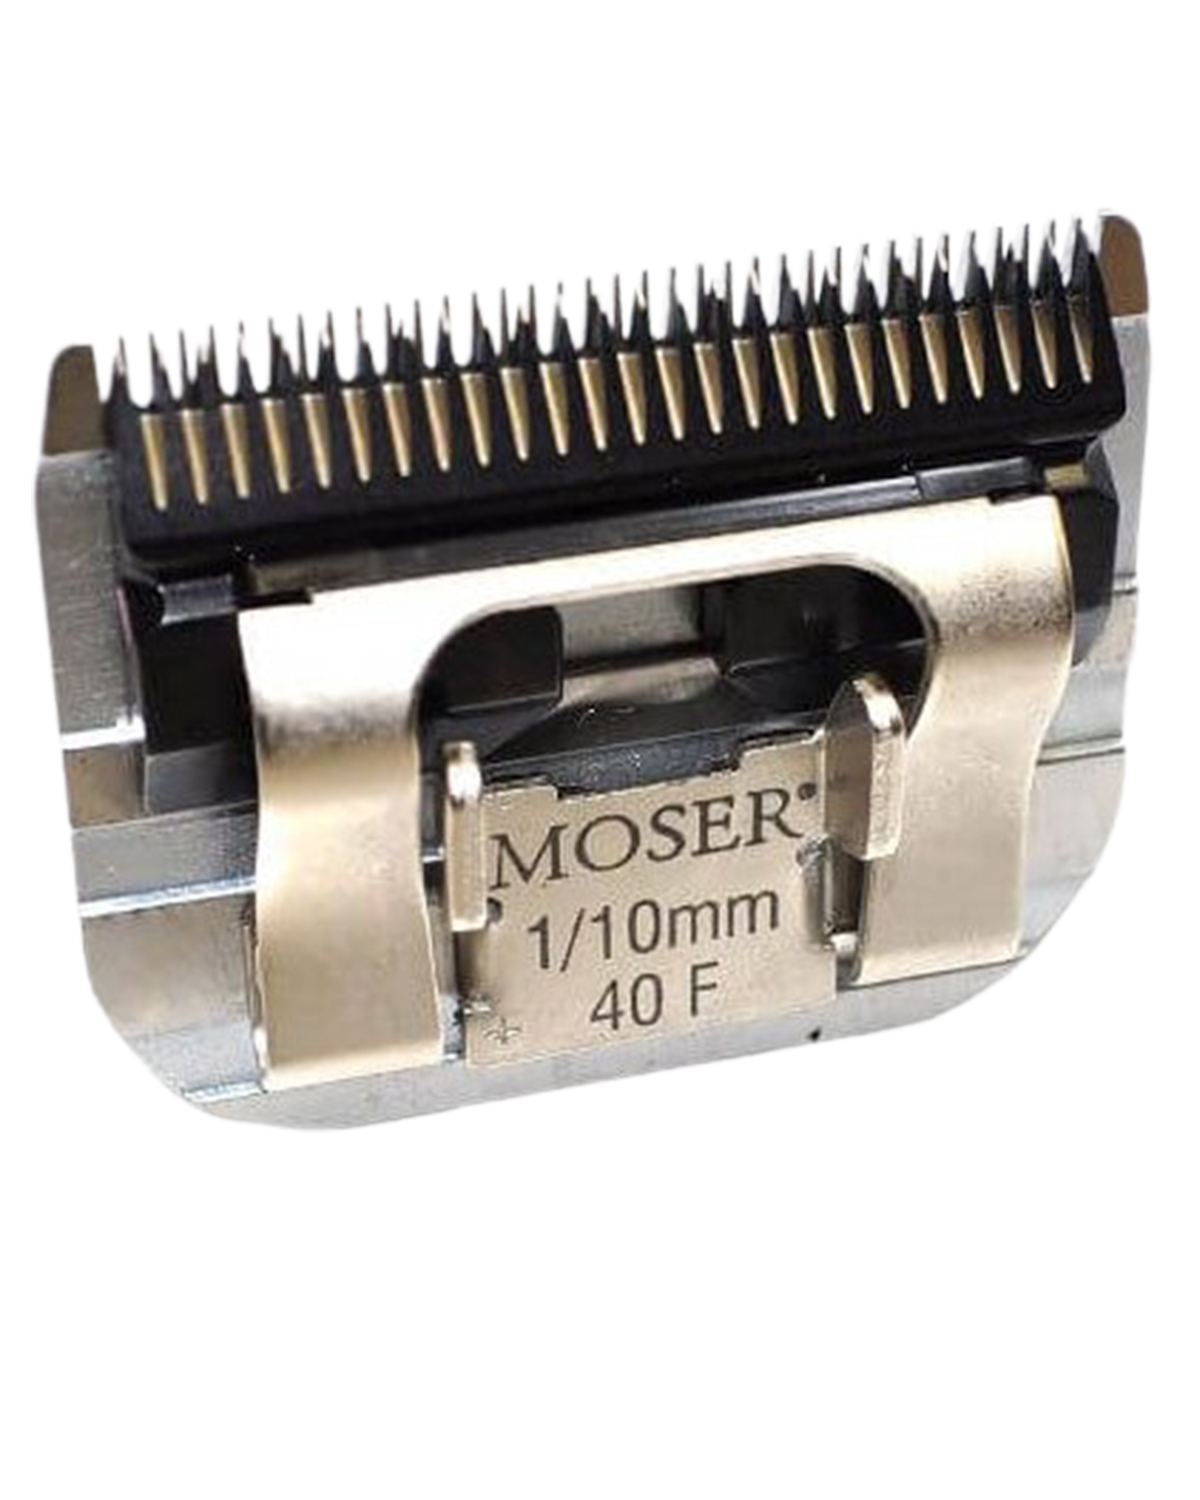 Ножевые блоки для машинок. Ножевой блок Moser 1245-7310, 1/10 мм, стандарт а5. Moser 1245-7310. Нож Moser 1245-7310. Ножевой блок Moser 0,1mm.